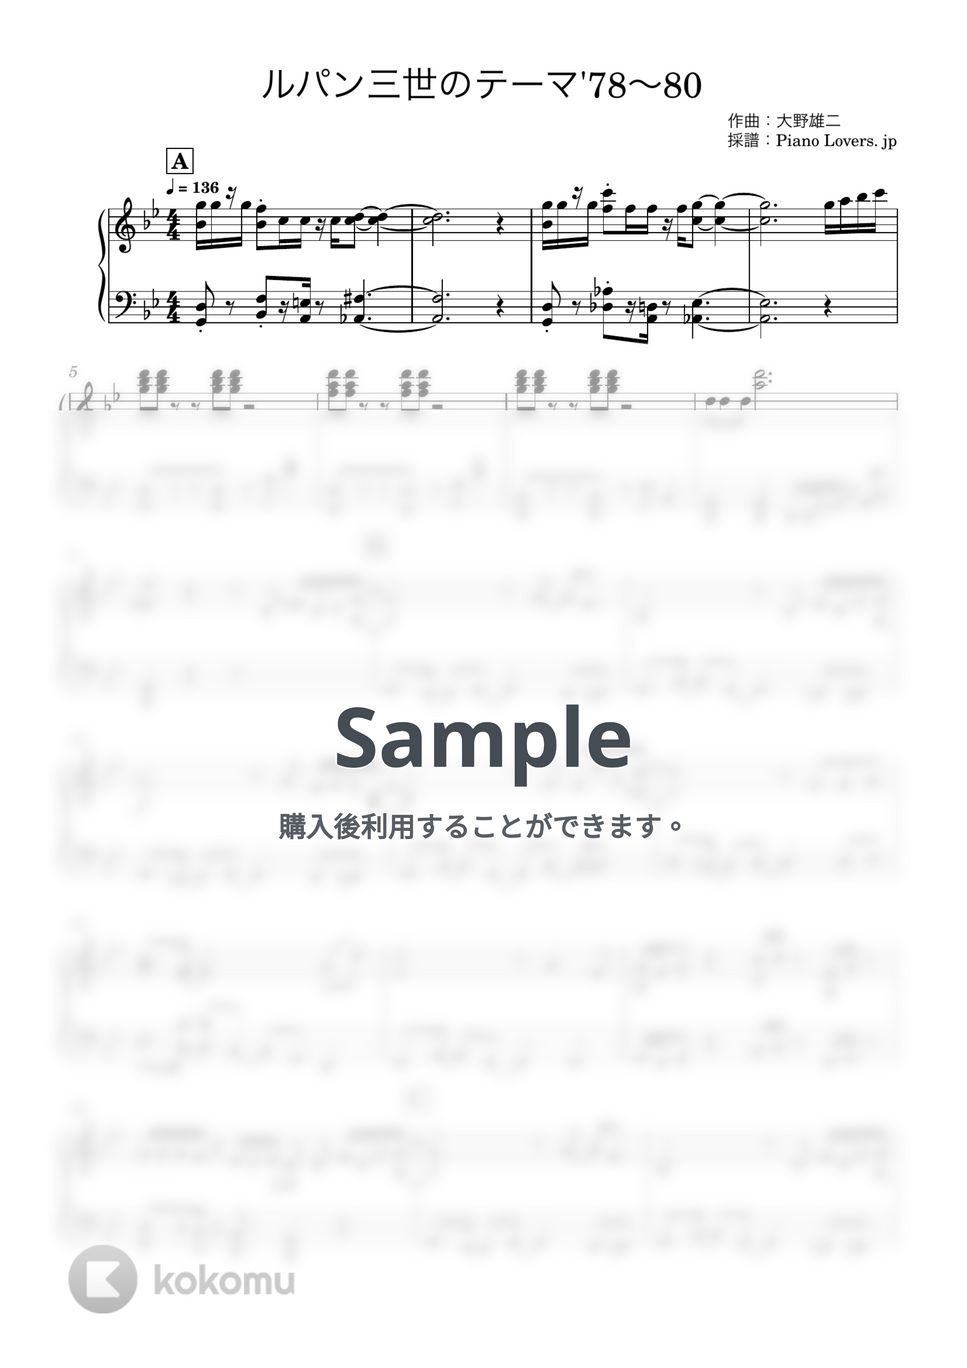 大野雄二 - ルパン三世メドレー(’78〜80) (手の小さい方向け) by Piano Lovers. jp